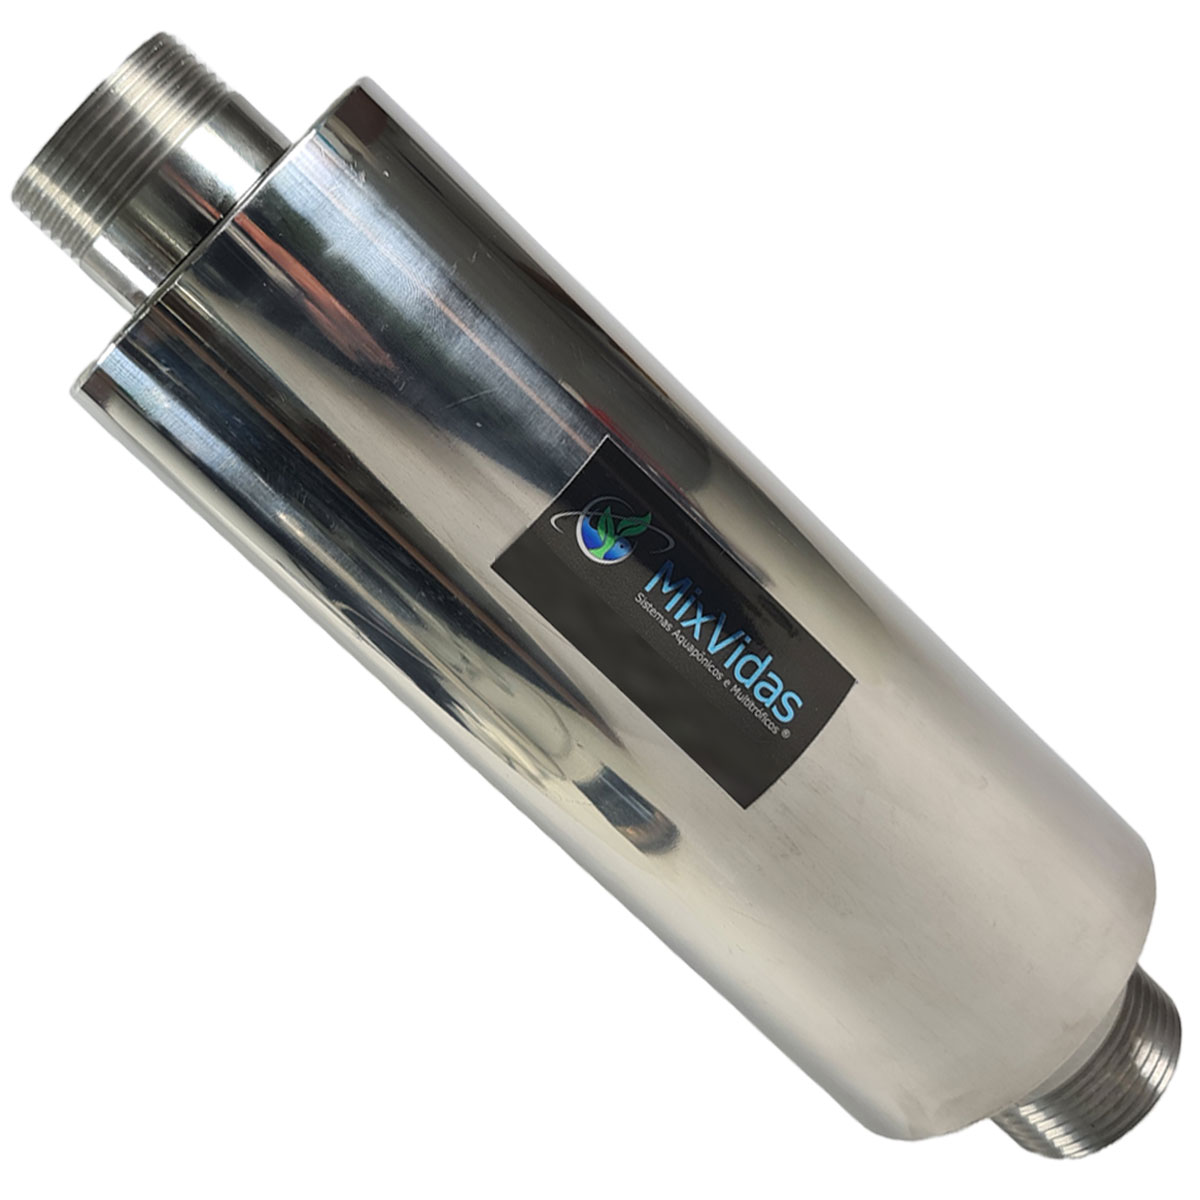 Silenciador para Compressor Radial - Asten com Rosca de 1¼ - mod 7AS4 - 122-082  - MixVidas - Sistemas Aquapônicos e Multitróficos